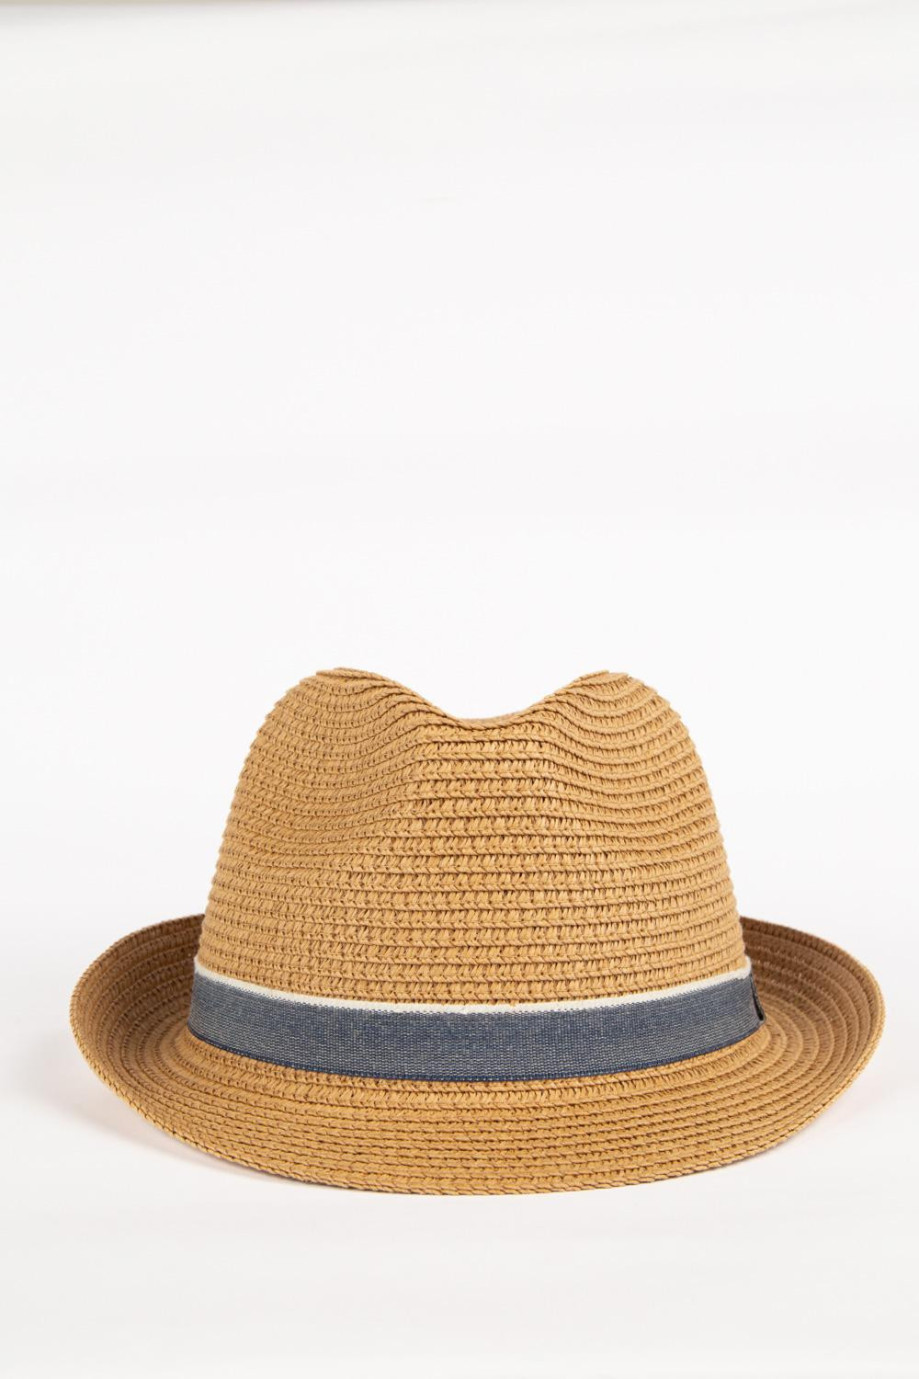 Sombrero tejido café claro con ala corta y cinta azul decorativa